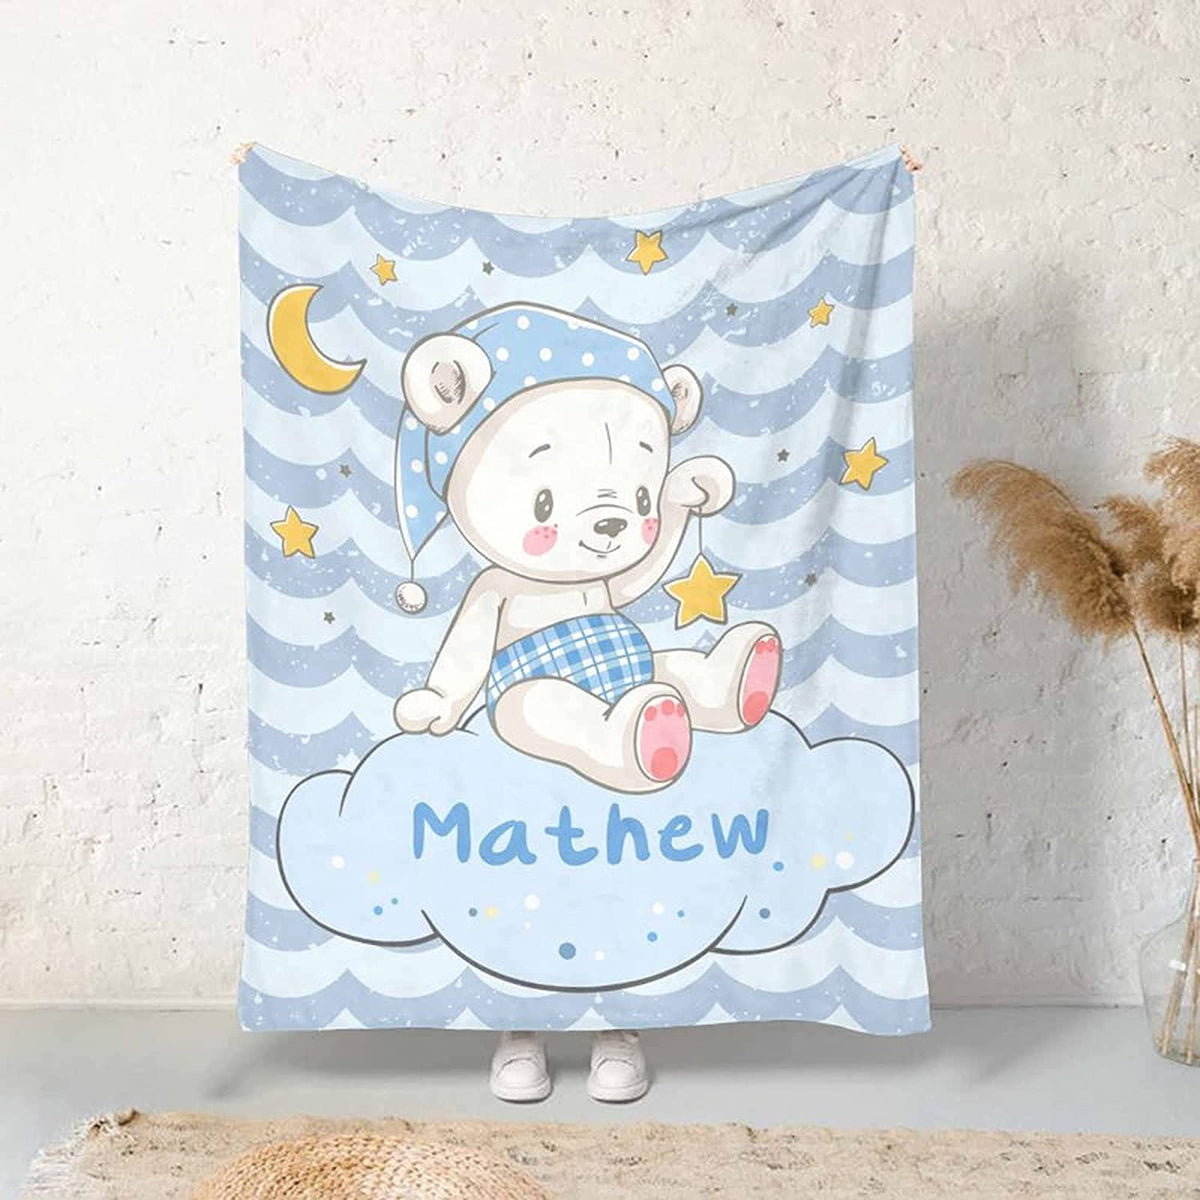 ustom Blanket for Baby Boys Girls , Kawaii Bear Personalized Blankets for Toddler Soft Animal Blanket